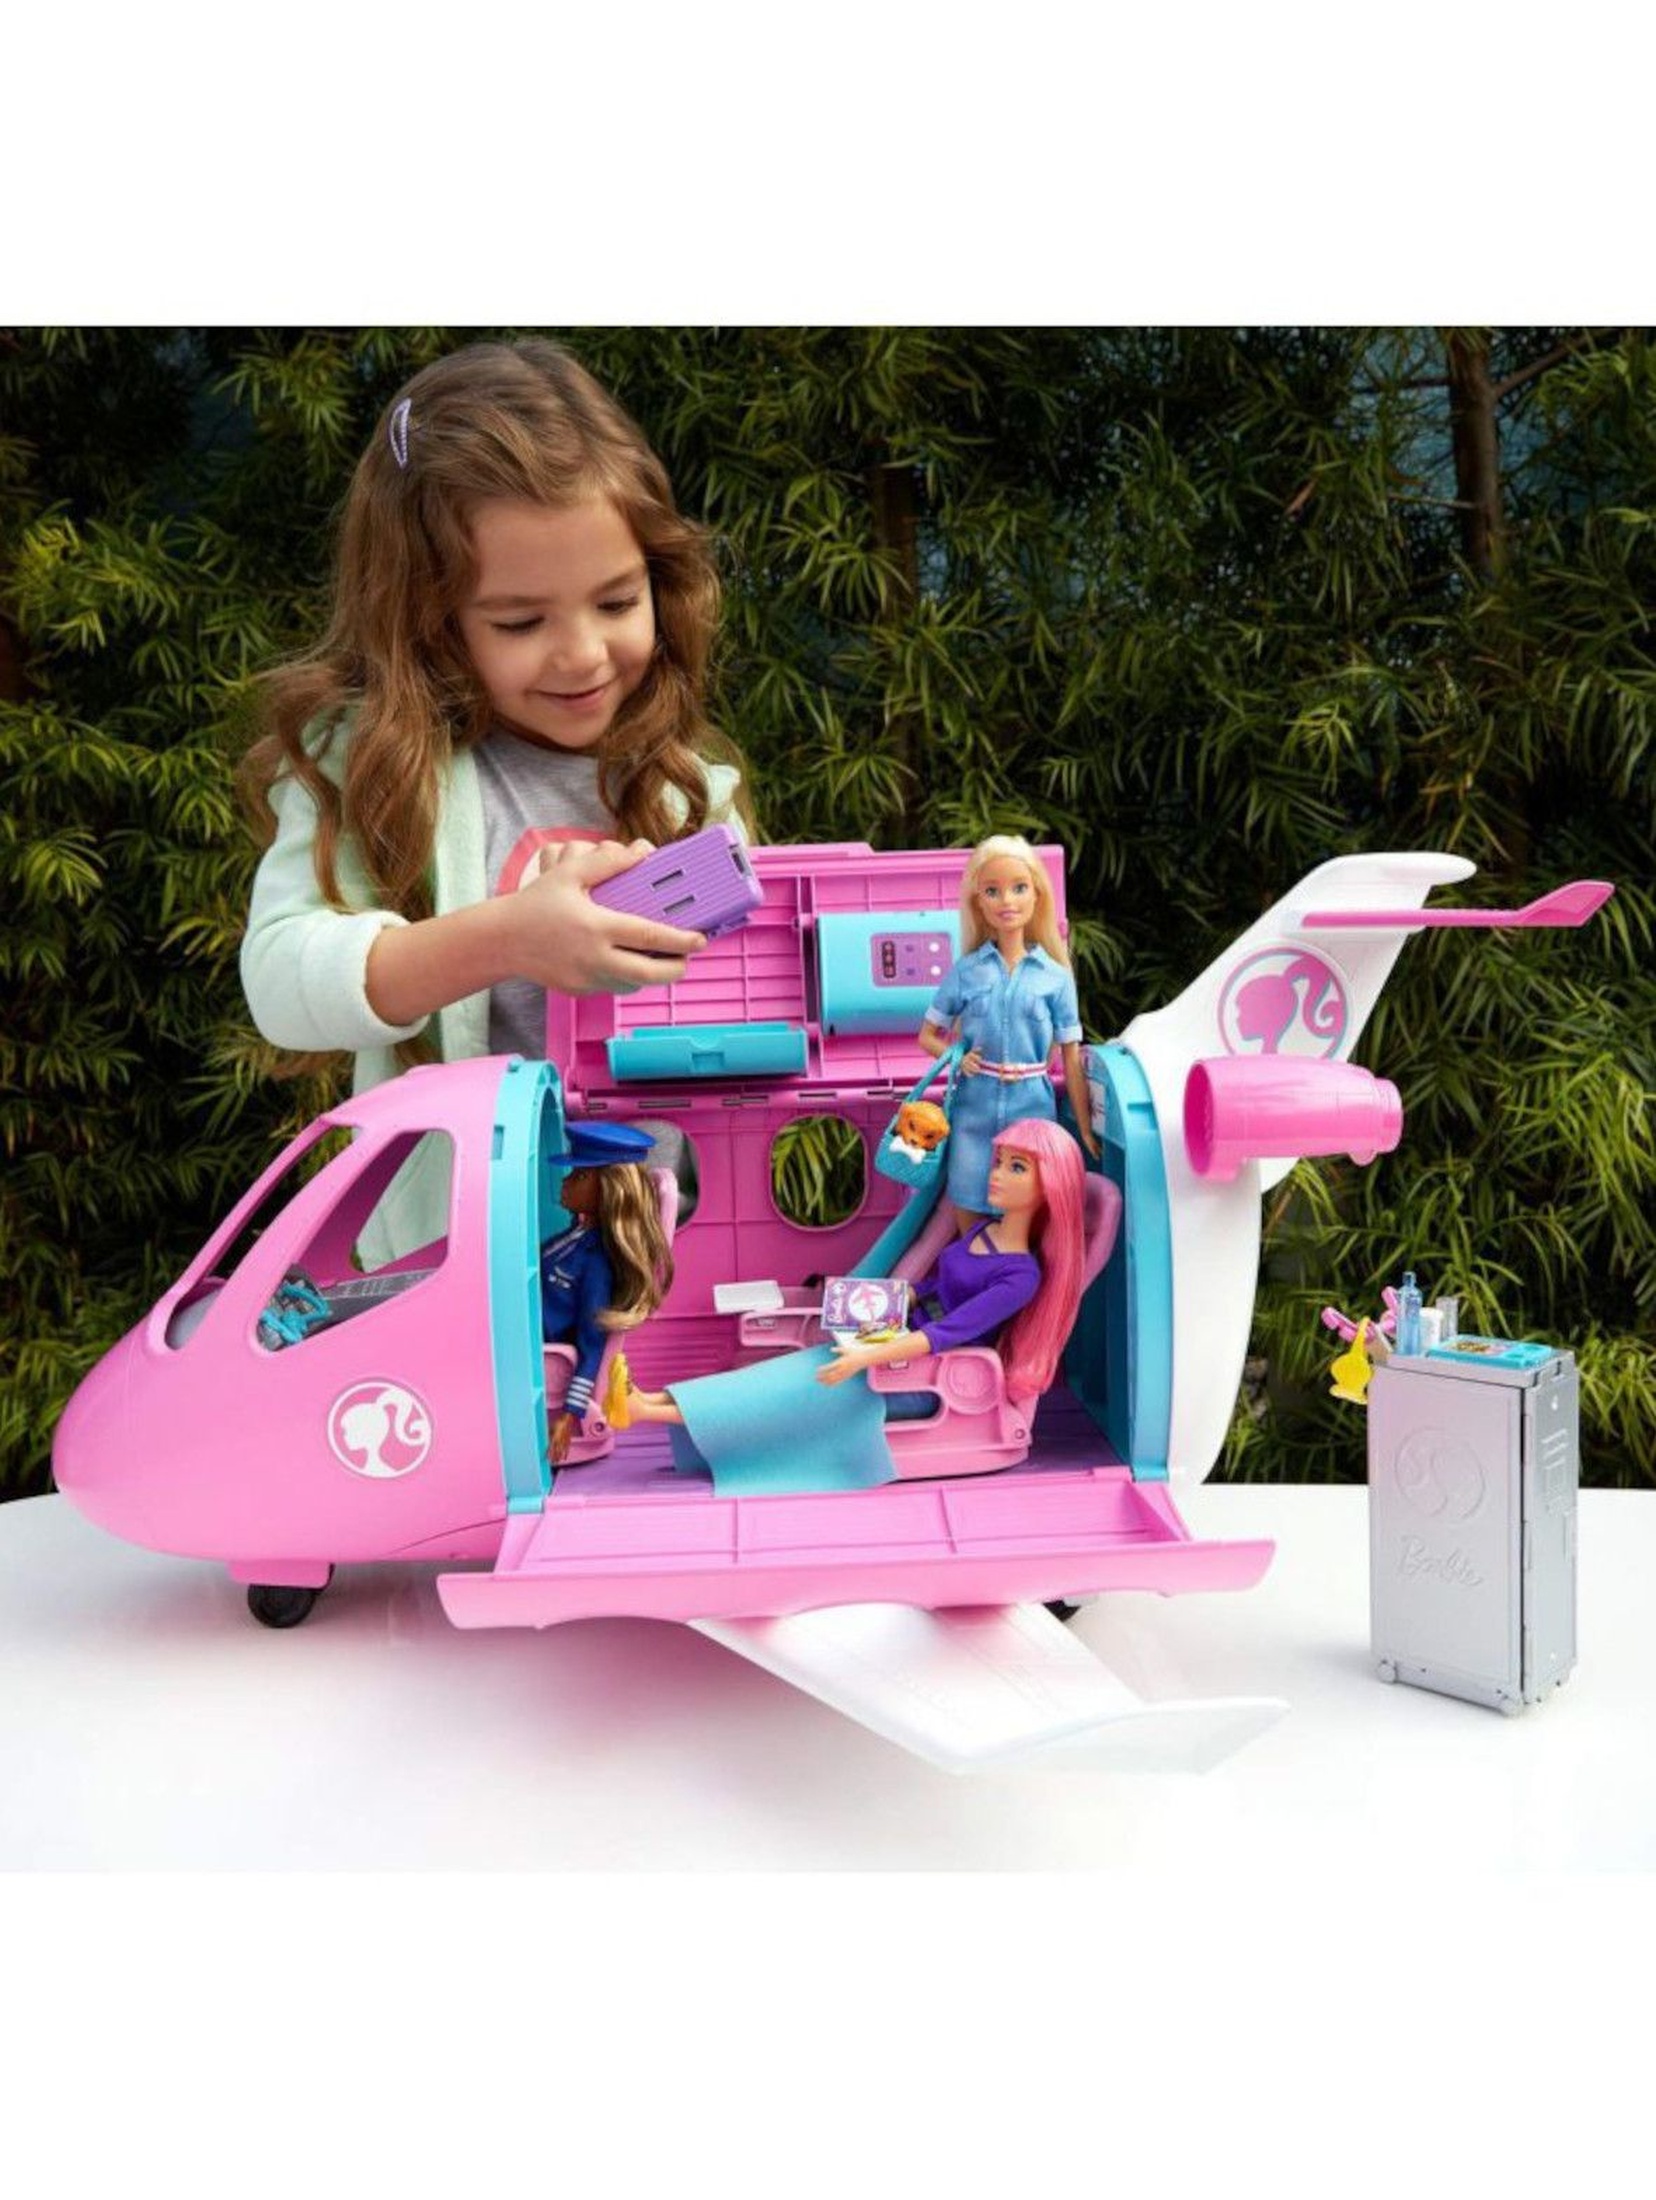 Barbie Dreamhouse Adventures - Różowy Samolot Barbie + 15 Akcesoriów wiek 3+